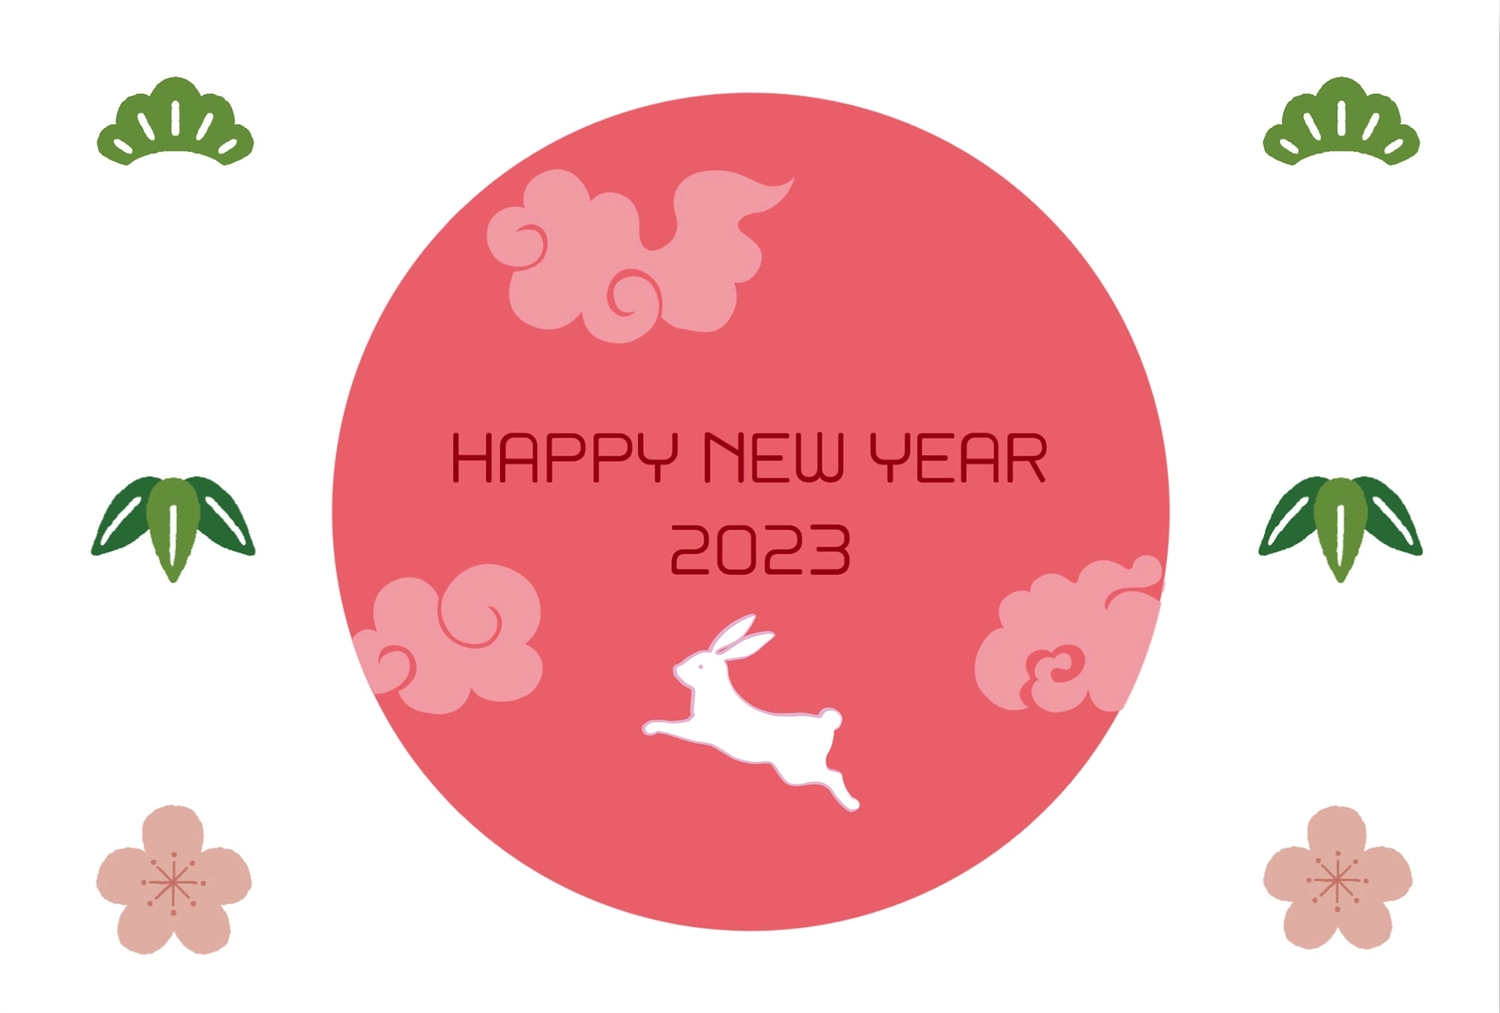 松竹梅とうさぎの年賀状, New Year's card, concord, English text, New Year Card template